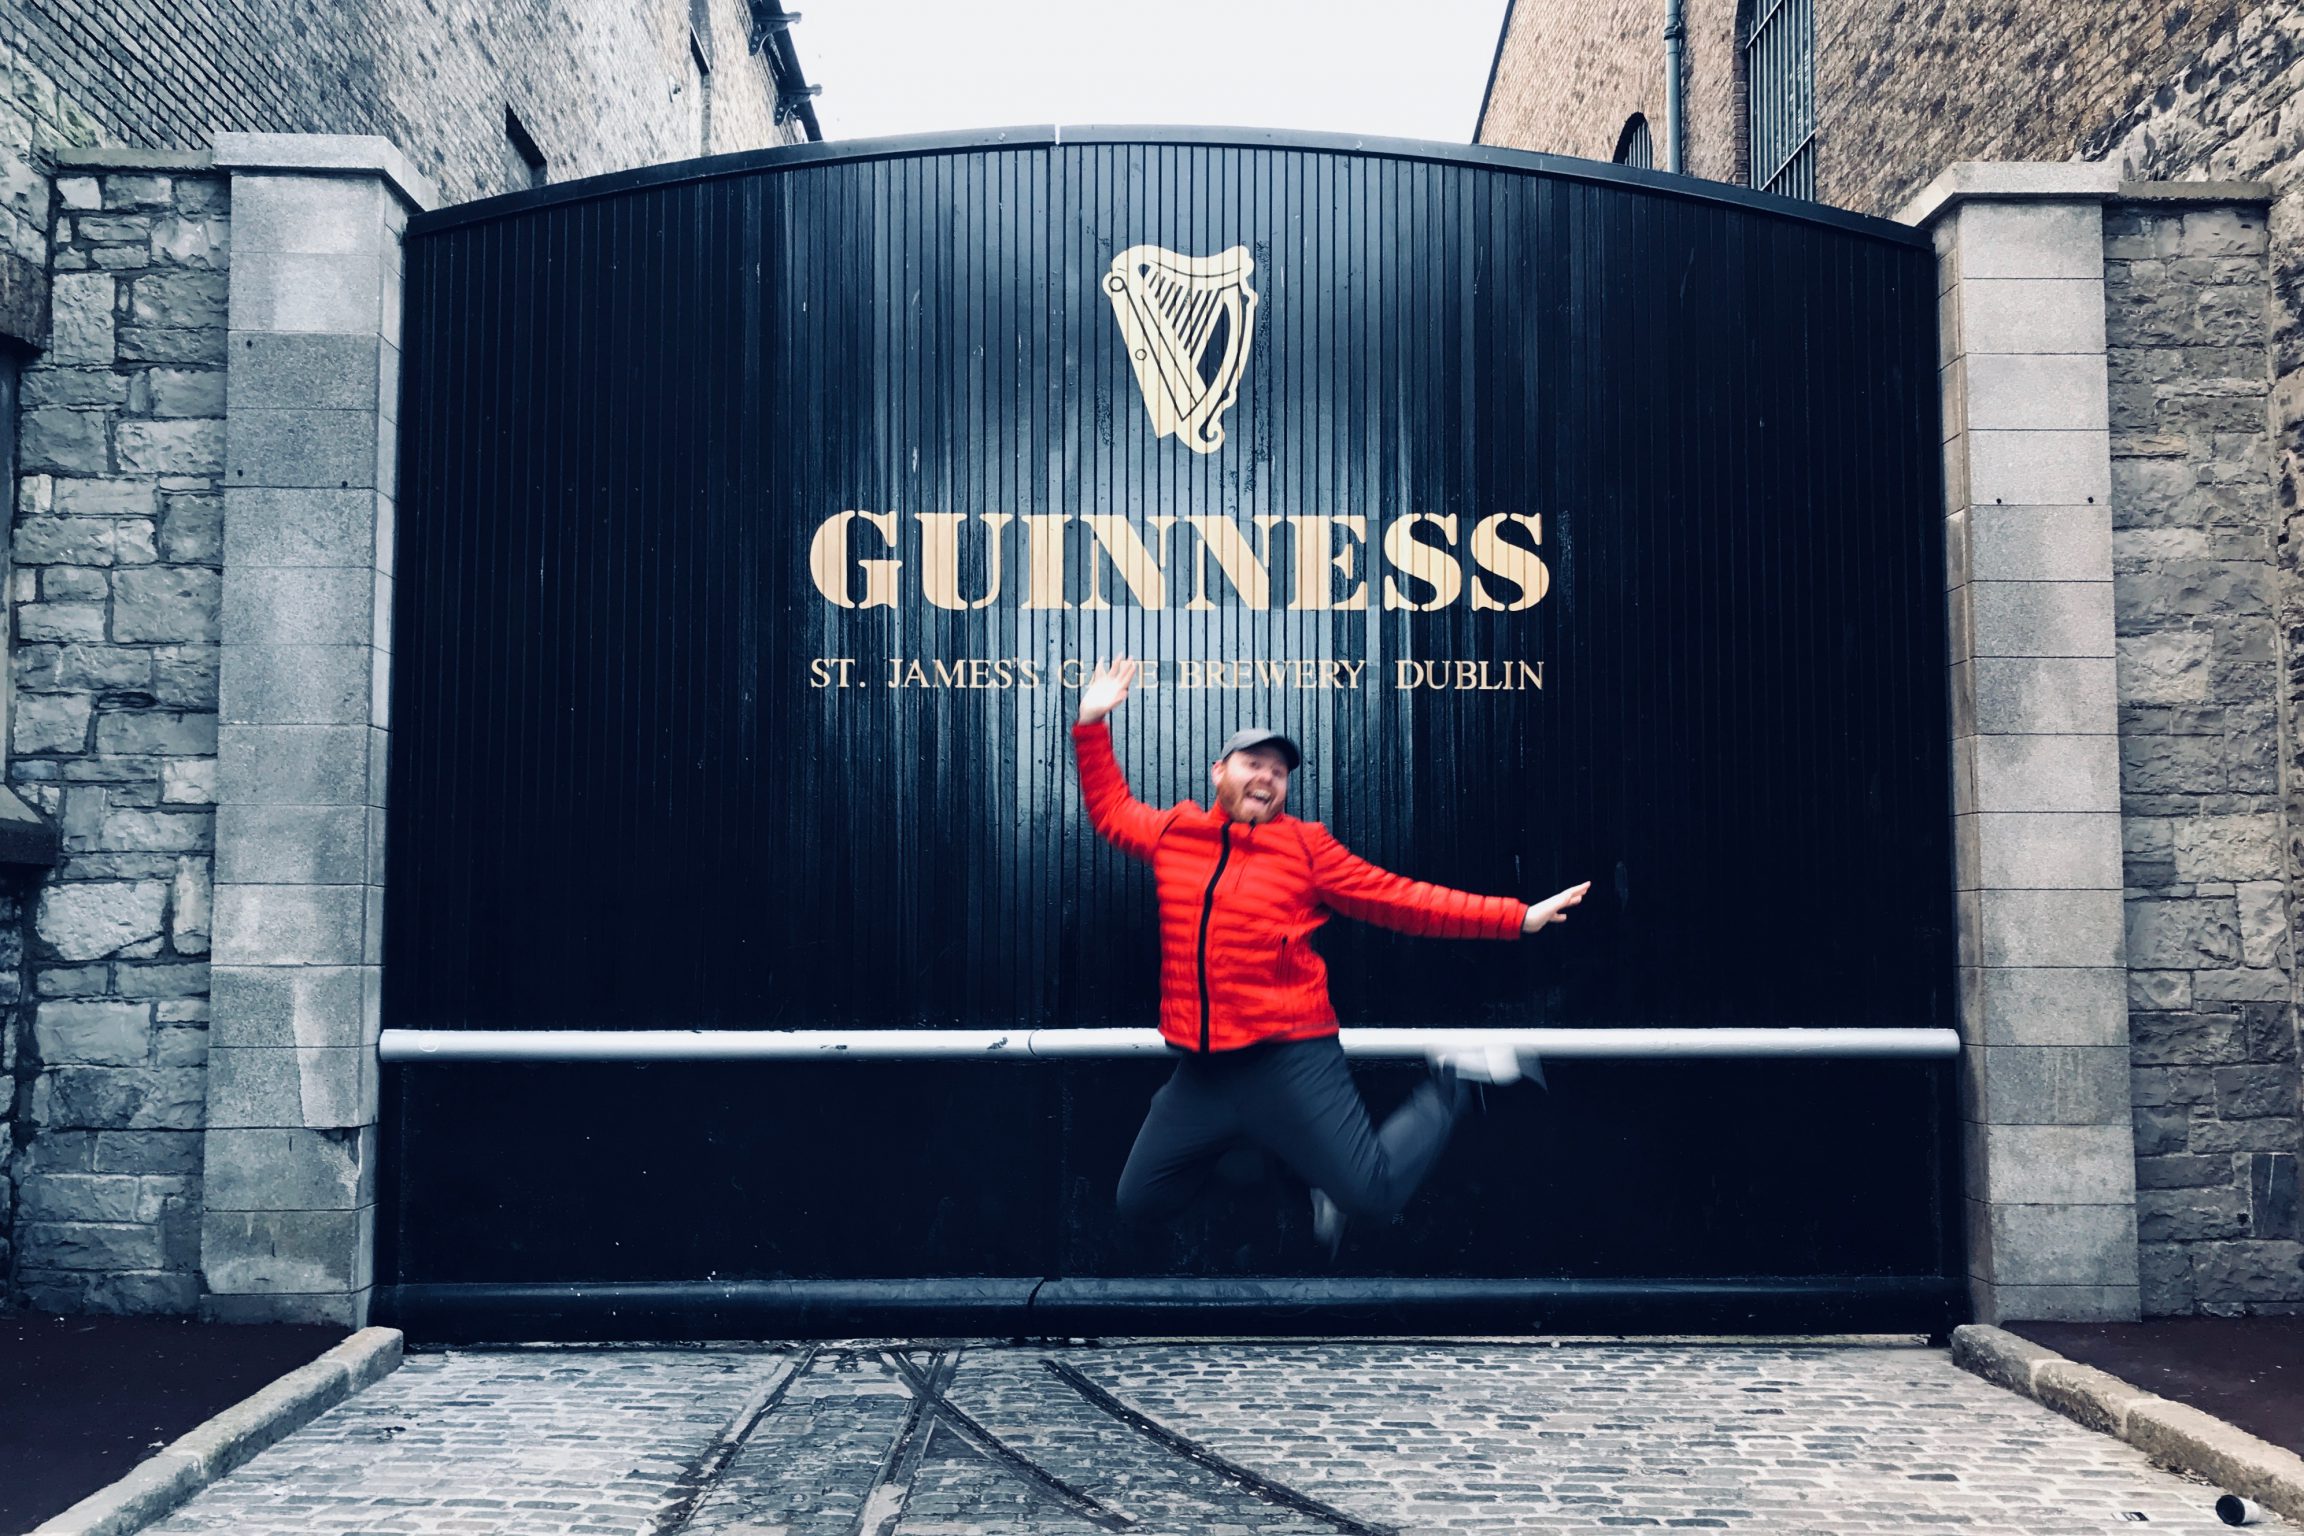 Visiting the Guinness Storehouse in Dublin